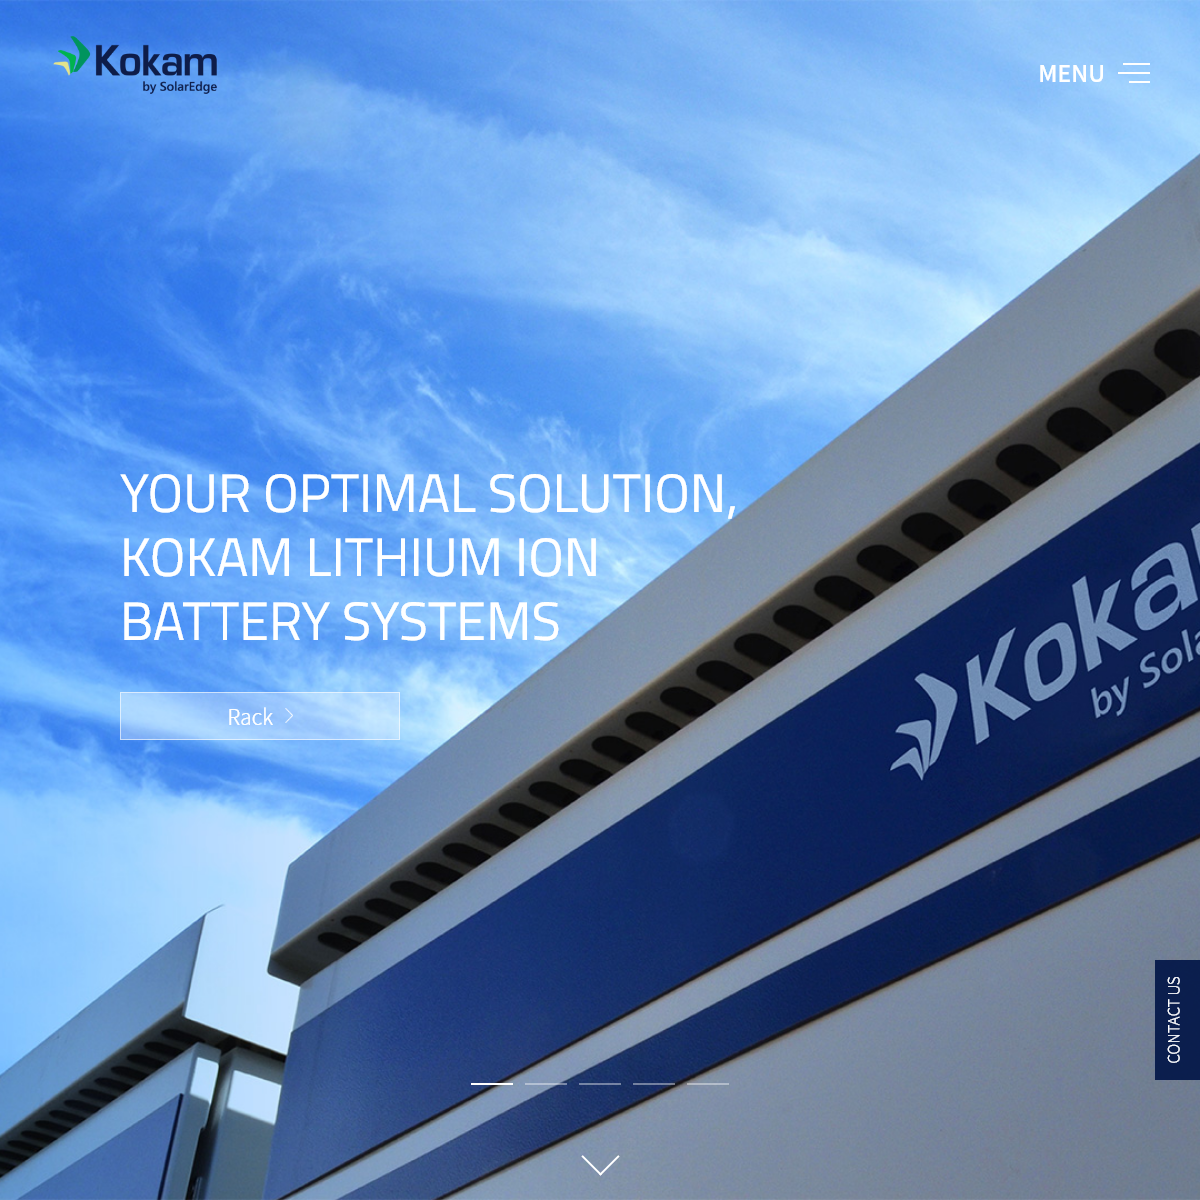 A complete backup of kokam.com